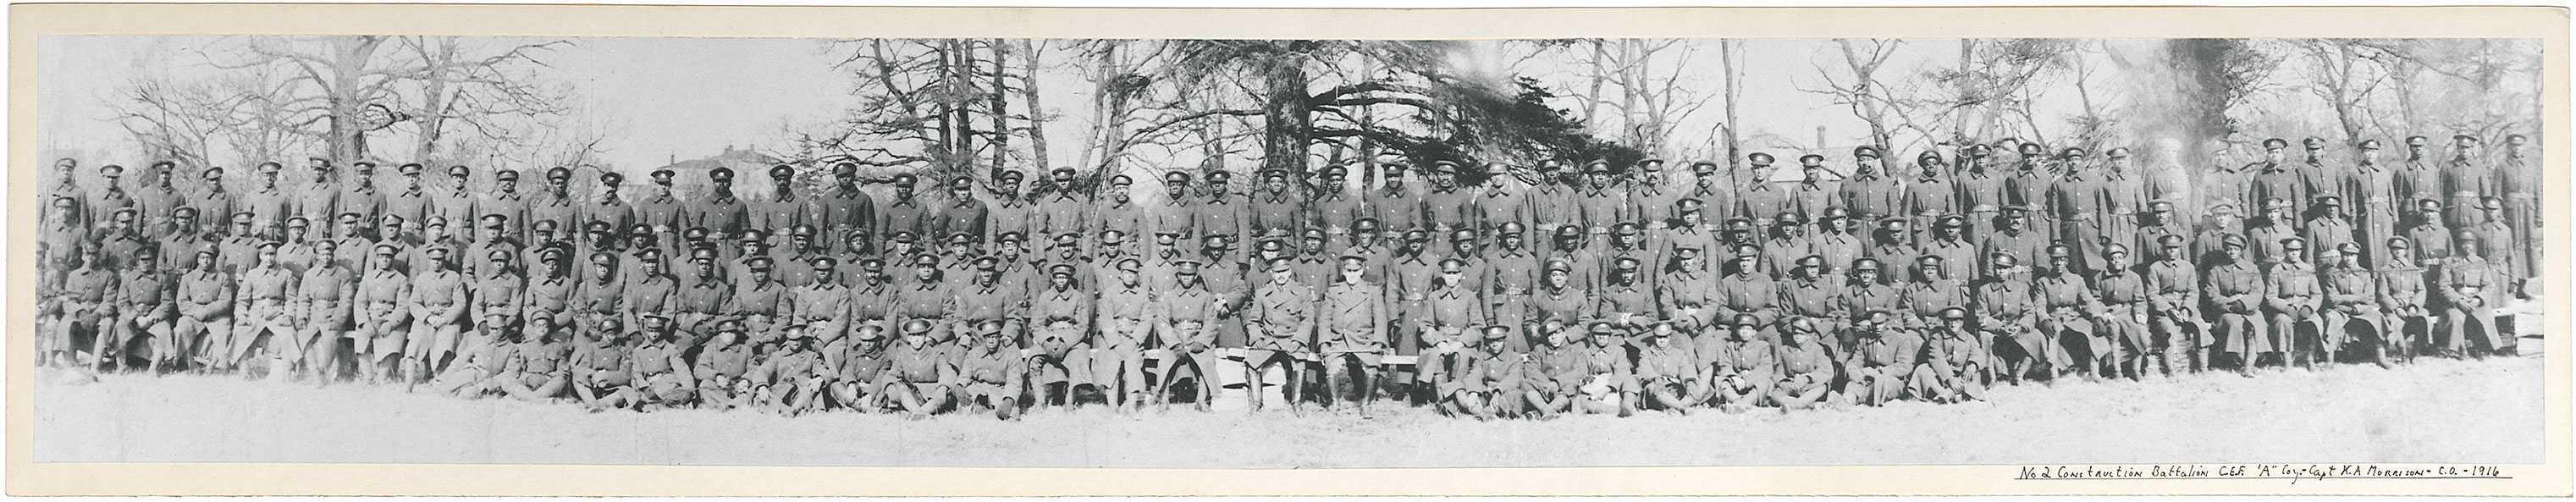 Photographie en noir et blanc – De nombreux hommes noirs sont assis pour une photo de groupe. La plupart portent de longs manteaux militaires. Des arbres et des toitures sont visibles à l’arrière-plan.